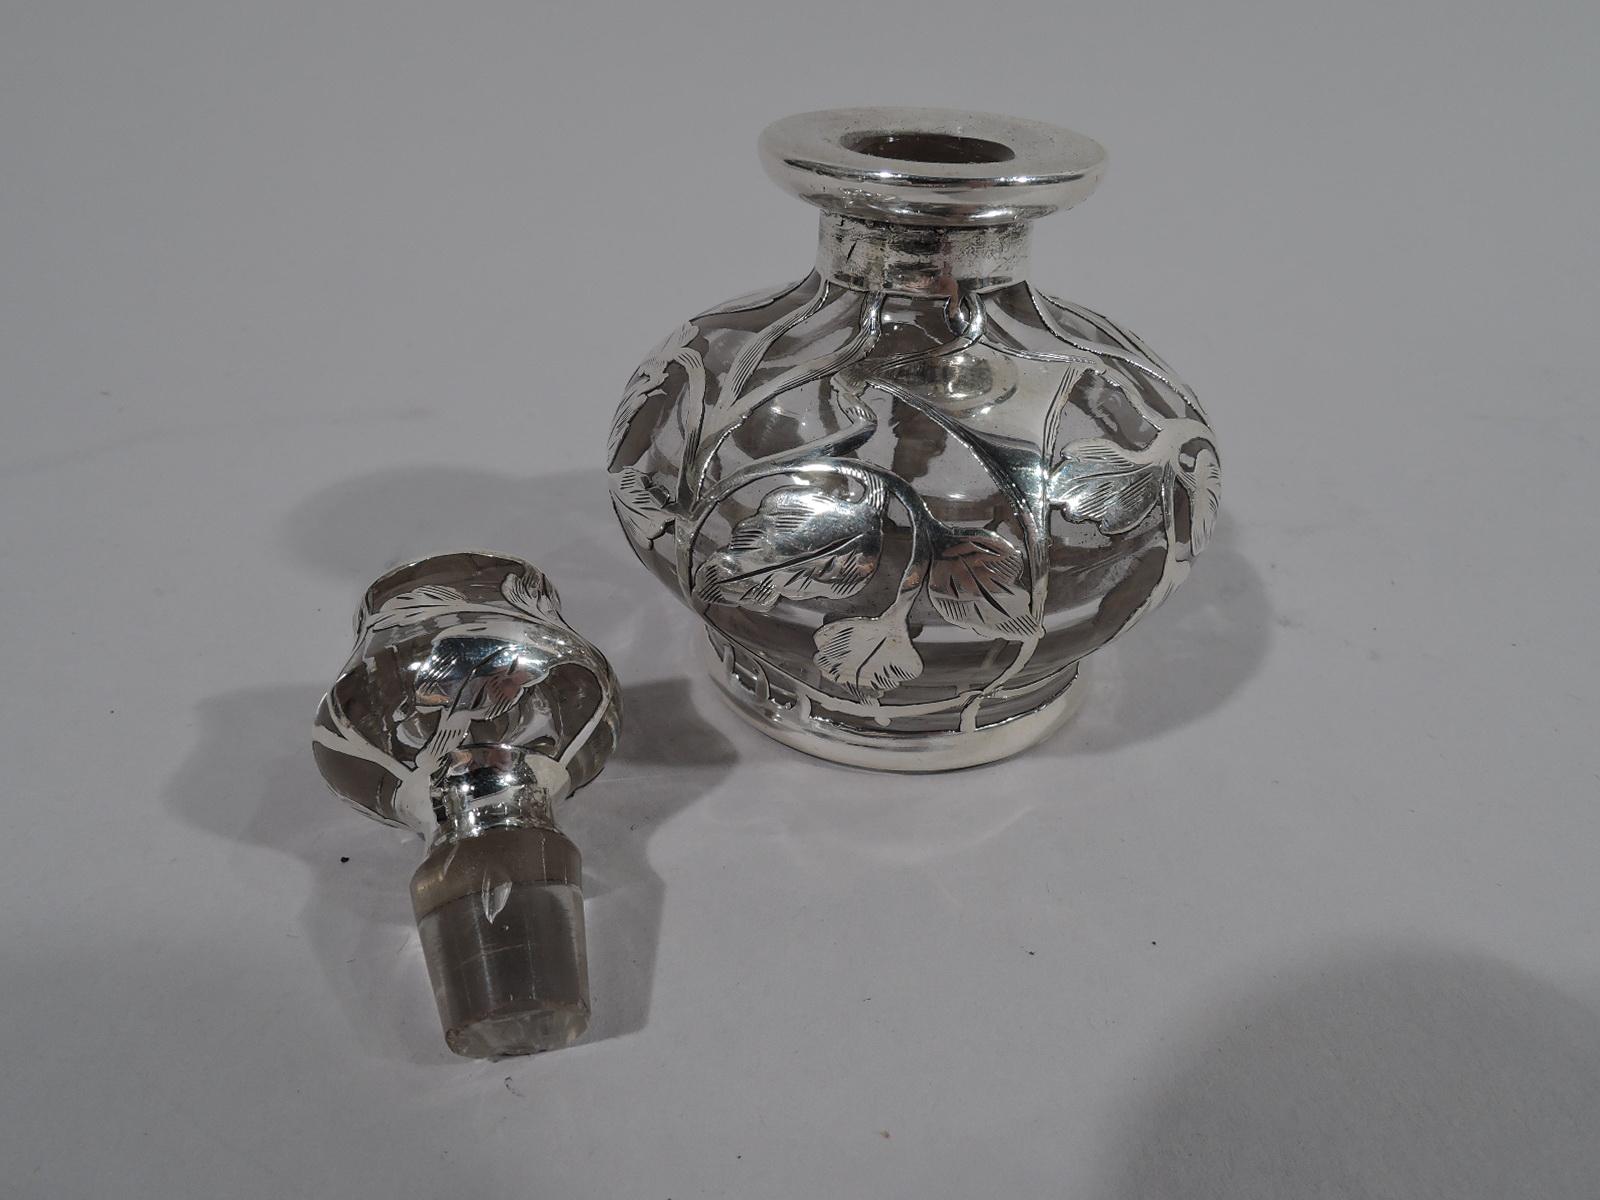 Antique American Art Nouveau Silver Overlay Perfume by Matthews (Art nouveau)